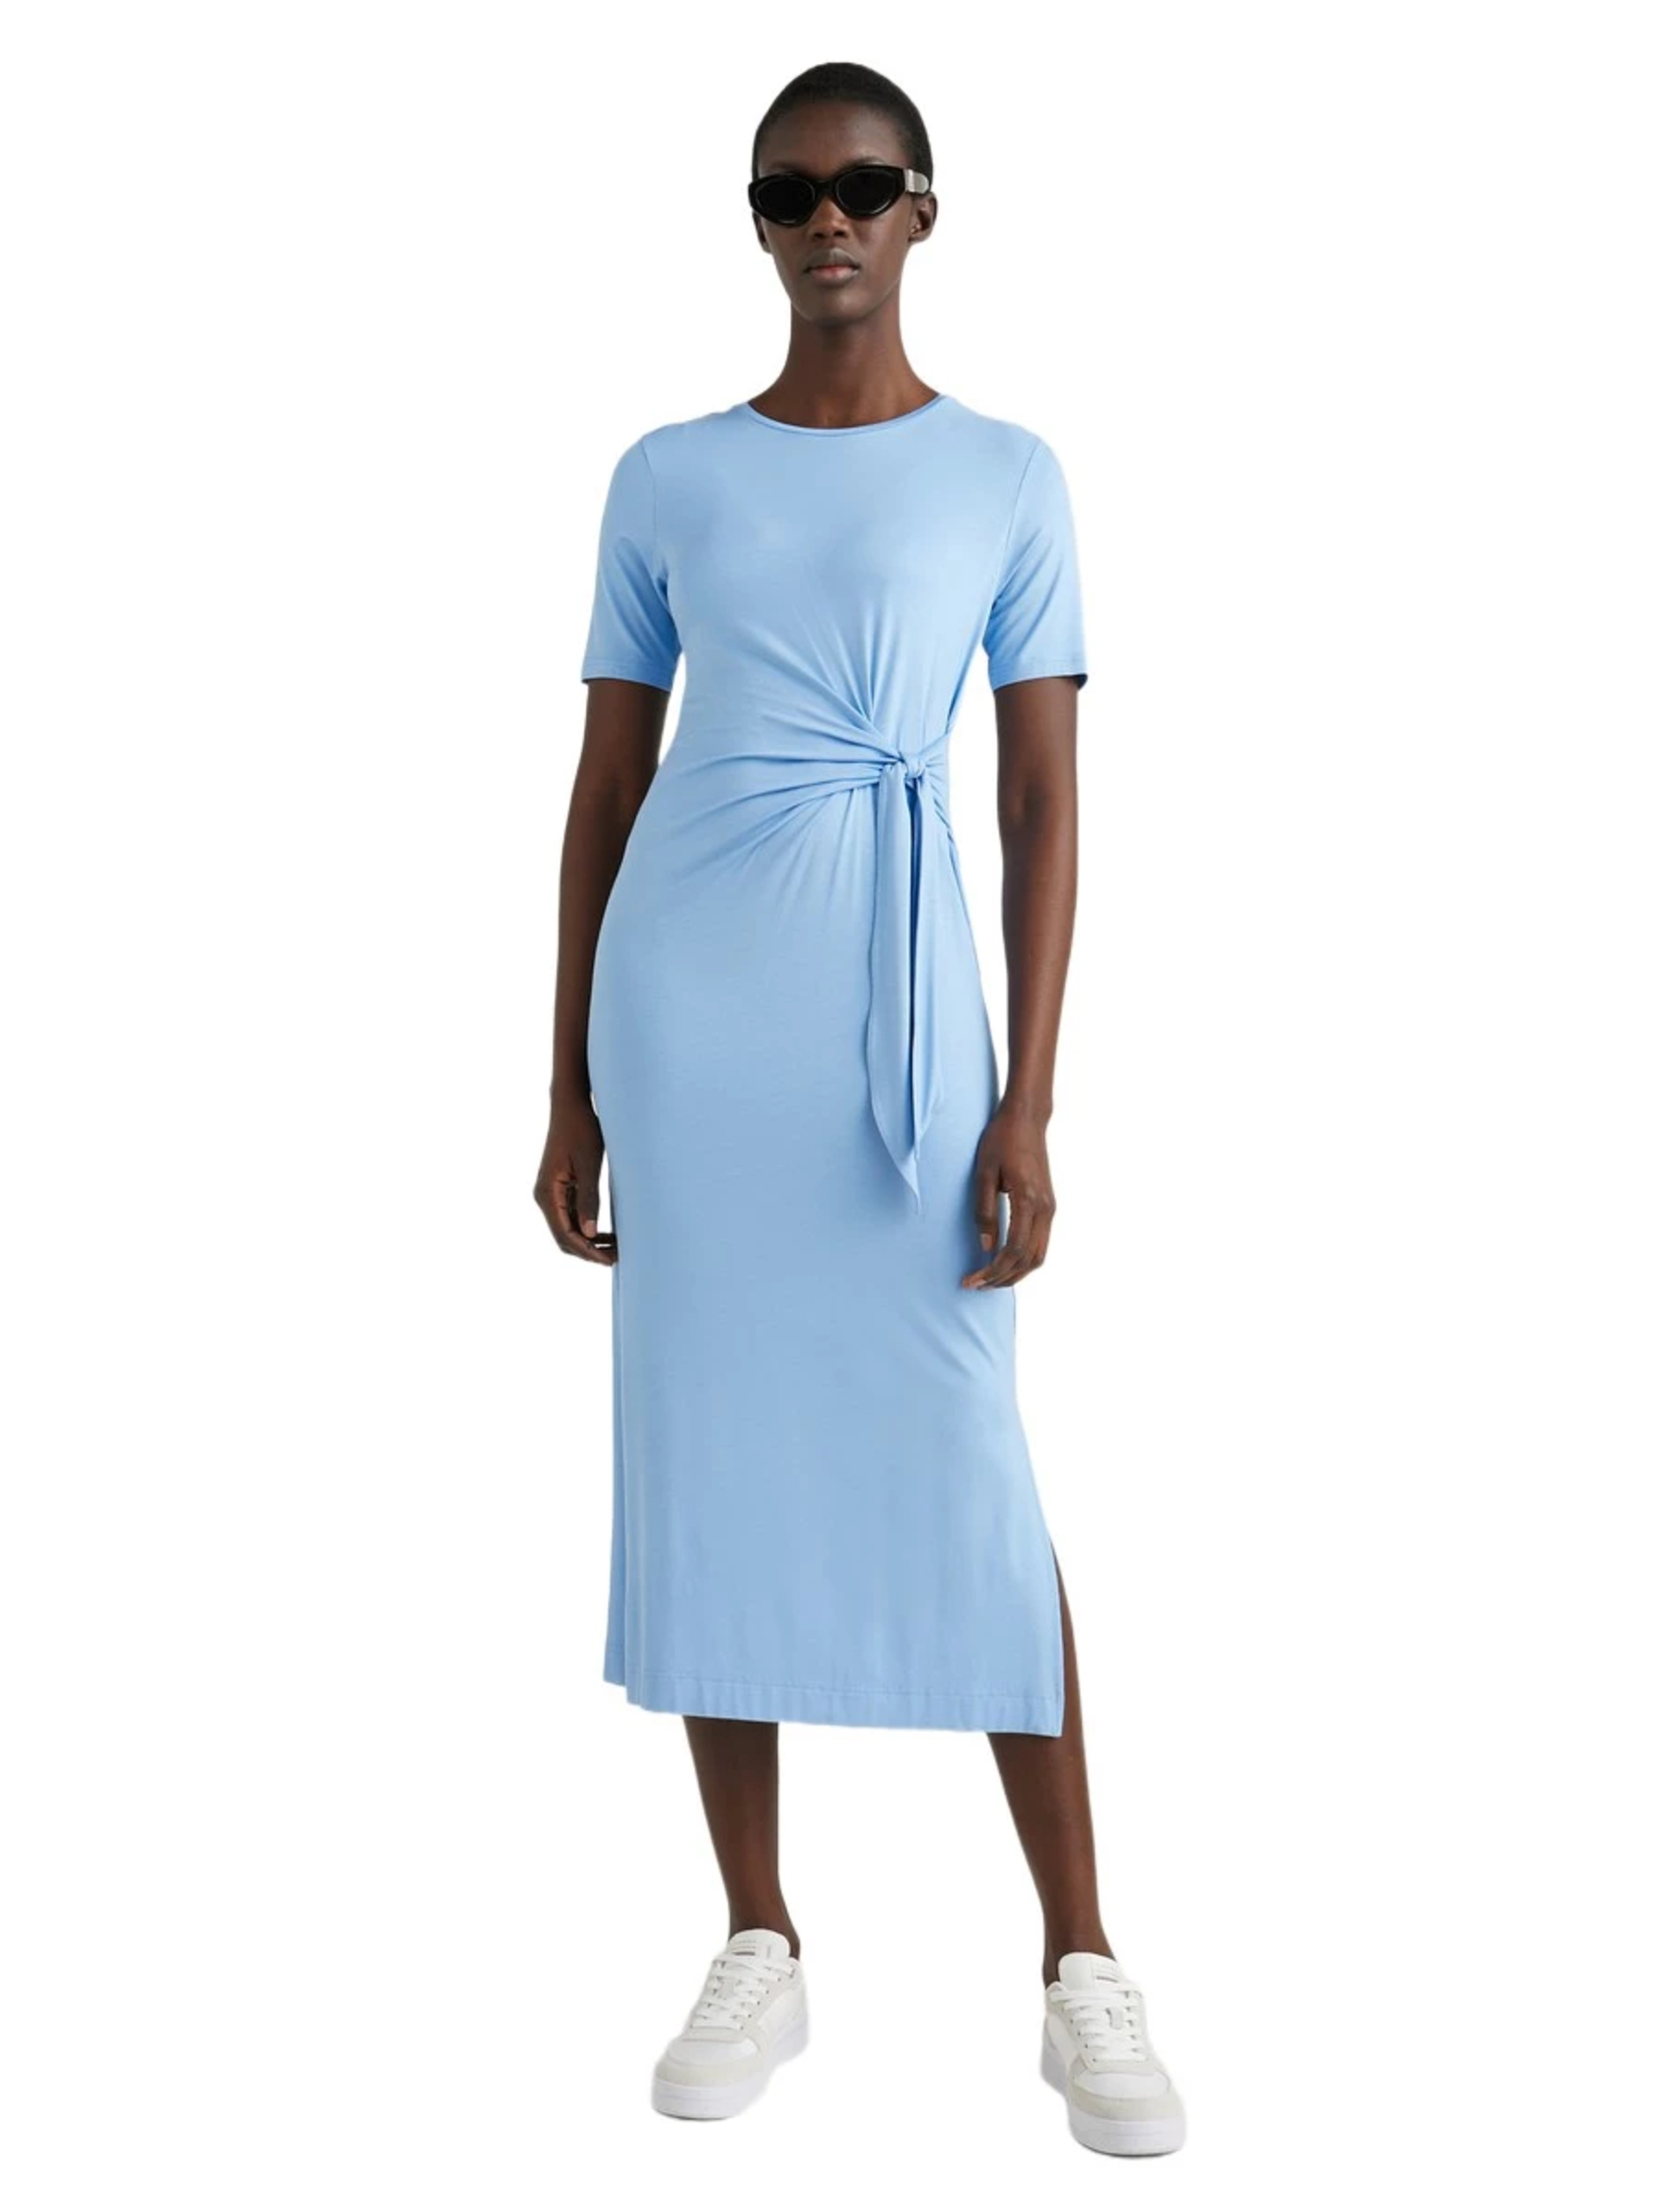 Tommy Hilfiger dámské světle modré šaty